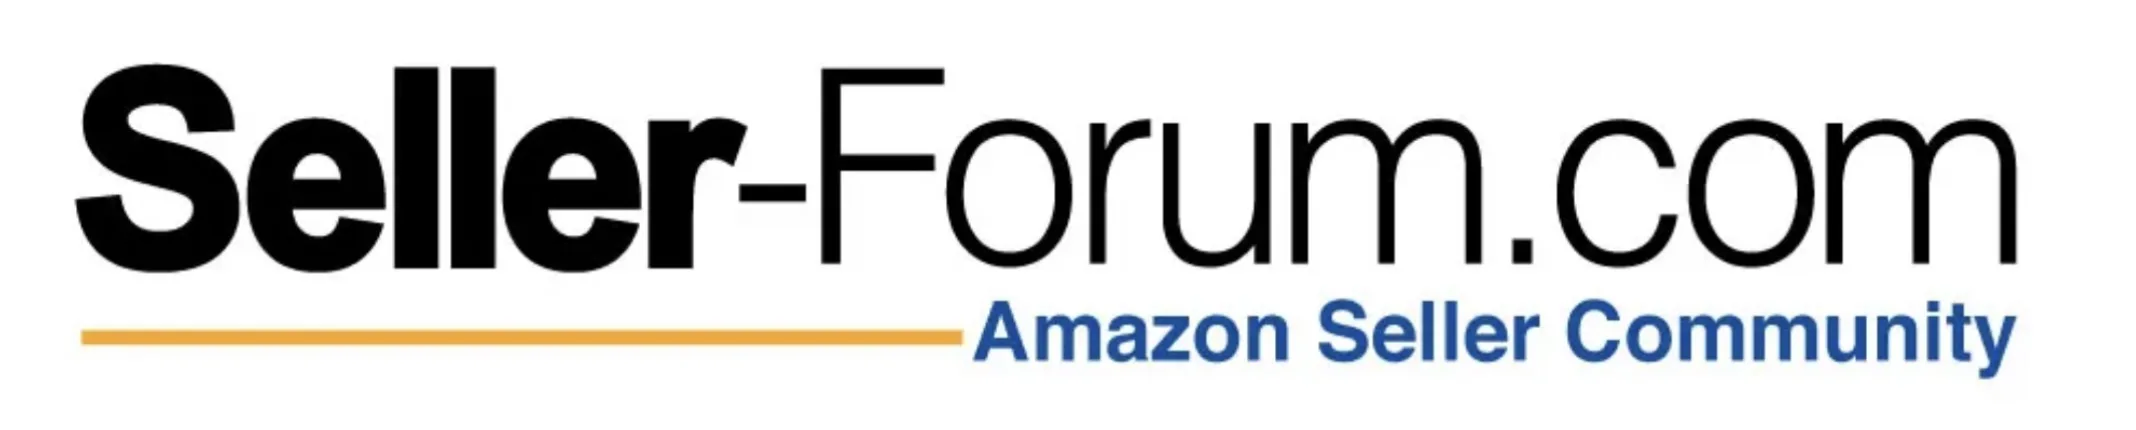 Amazon Seller Forum